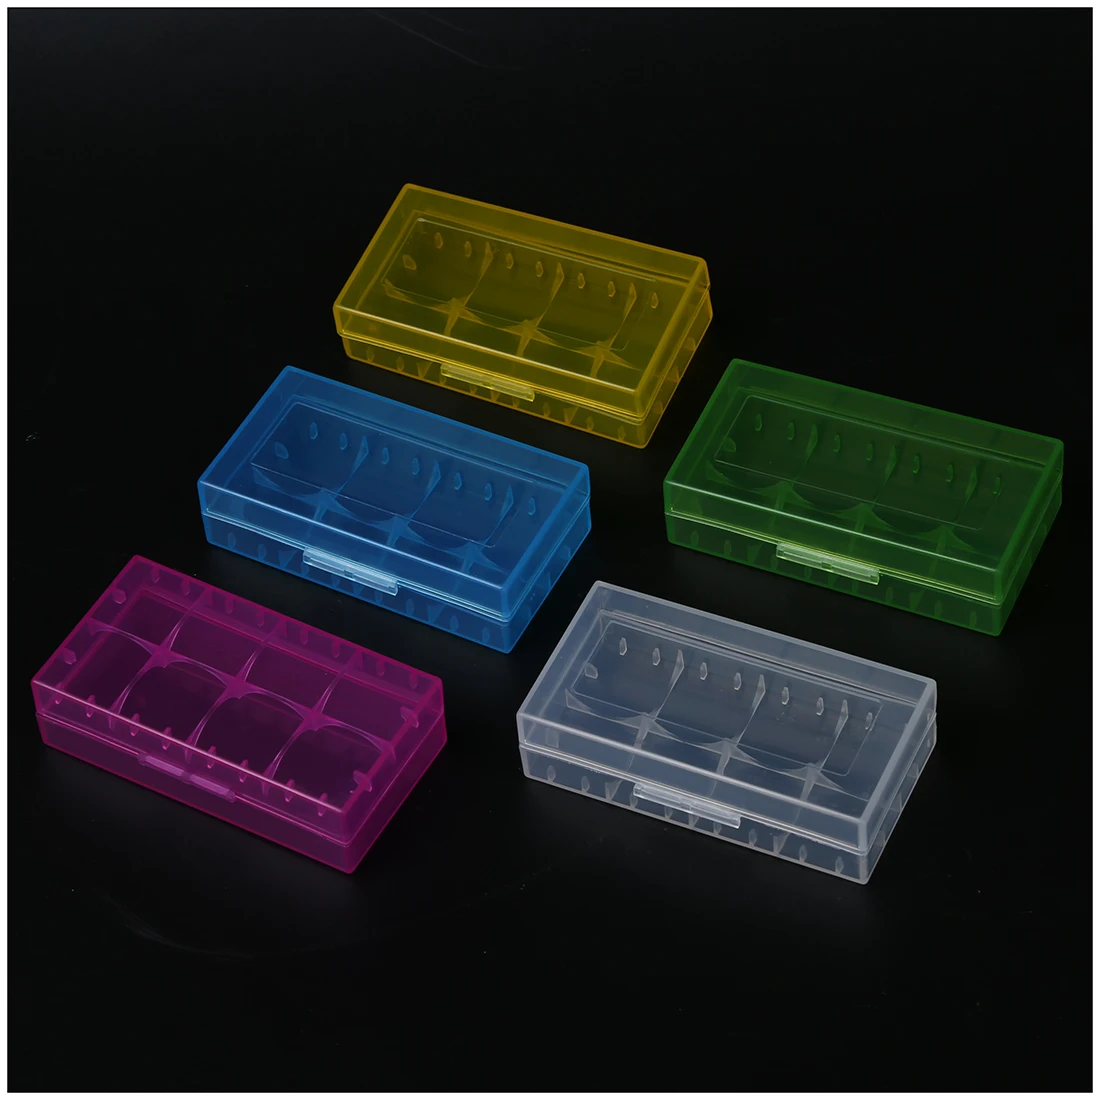 5 цветов в одном наборе, жесткий пластиковый чехол, держатель, коробка для хранения, стойка для батареи 18650